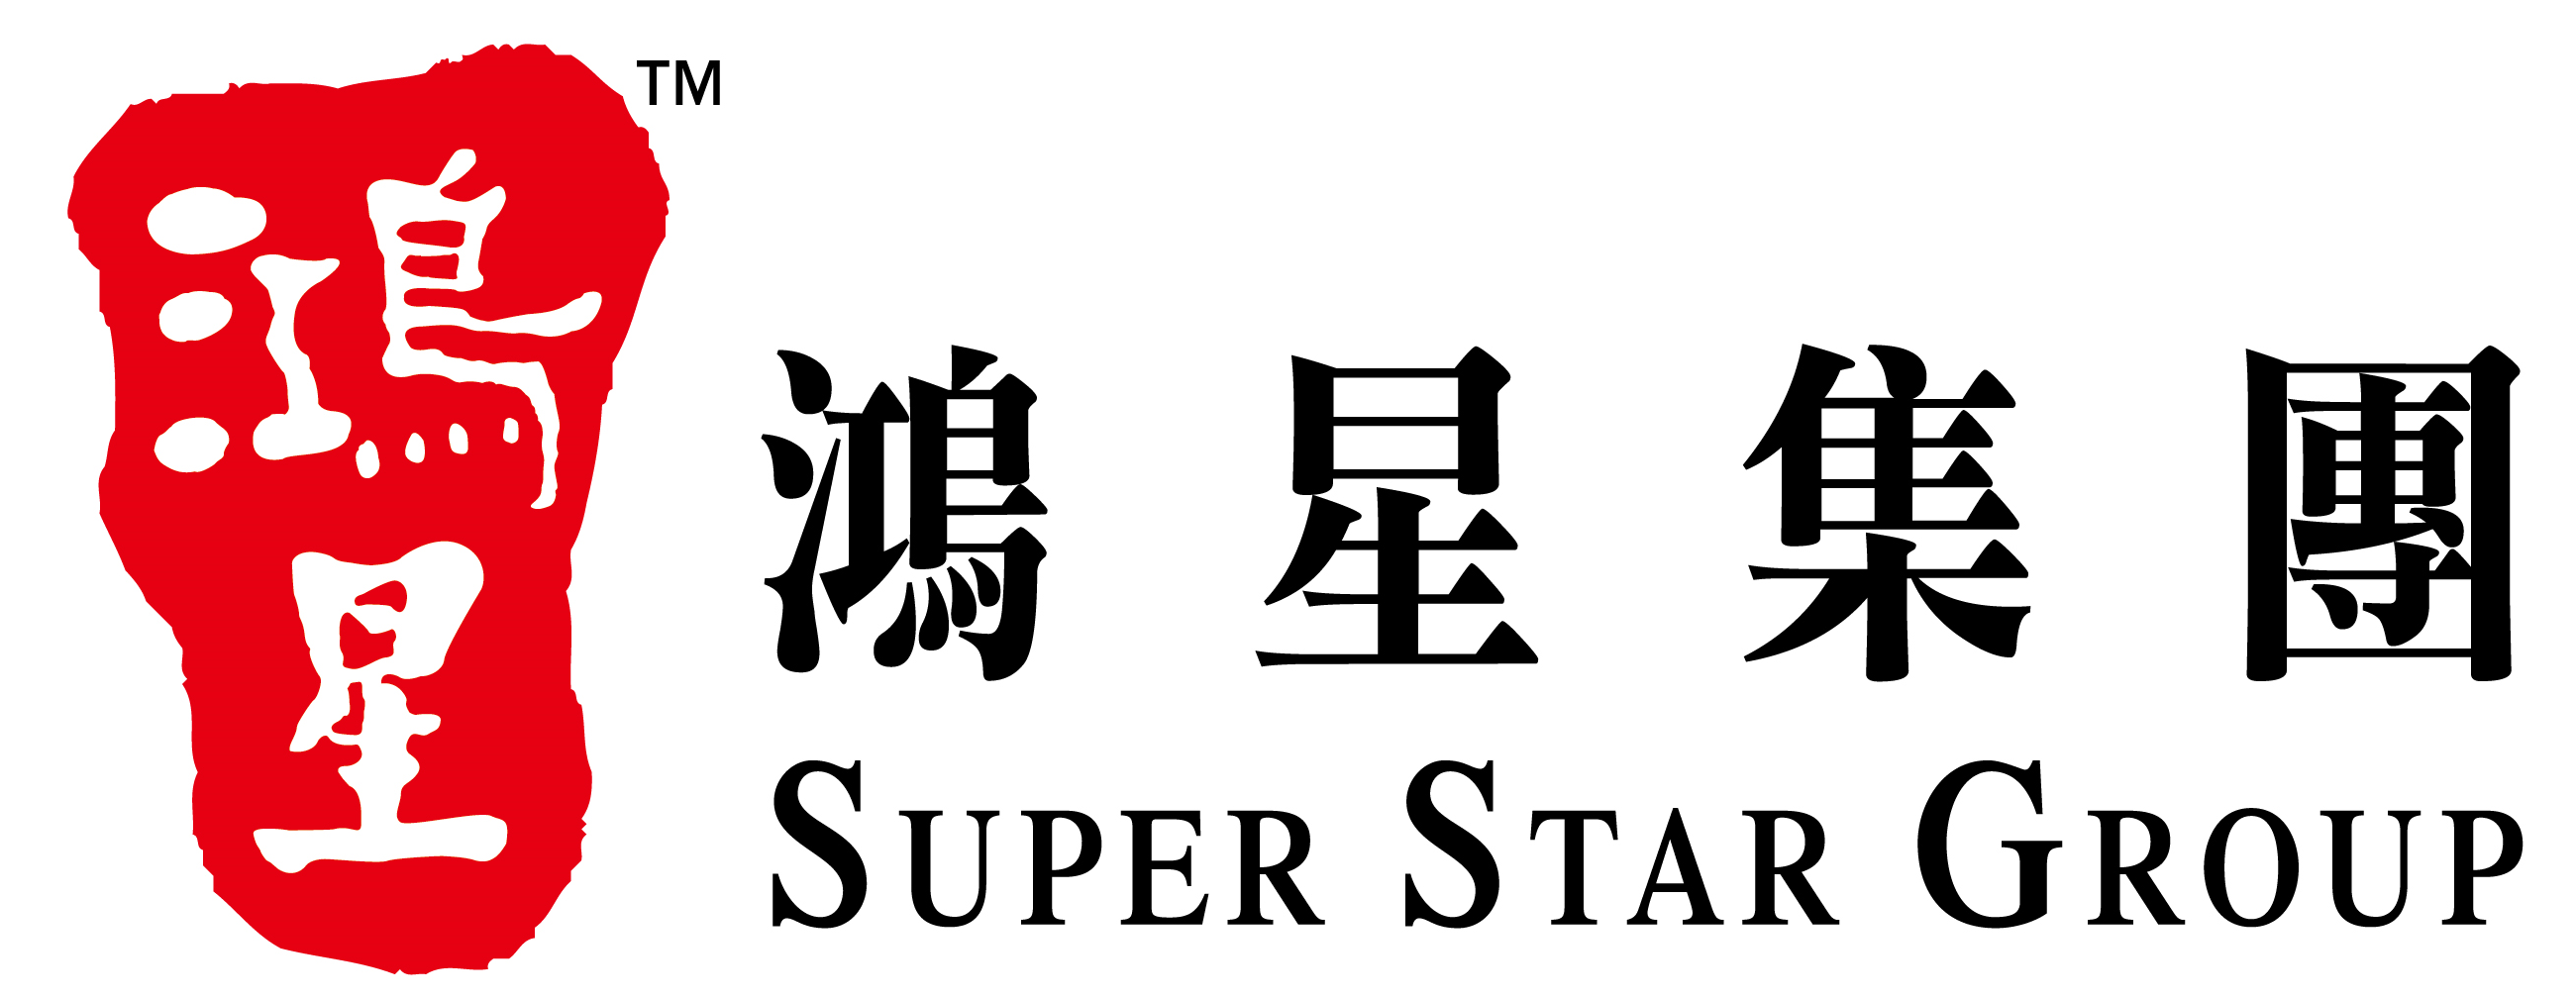 food scheme 2016 gold SuperStar